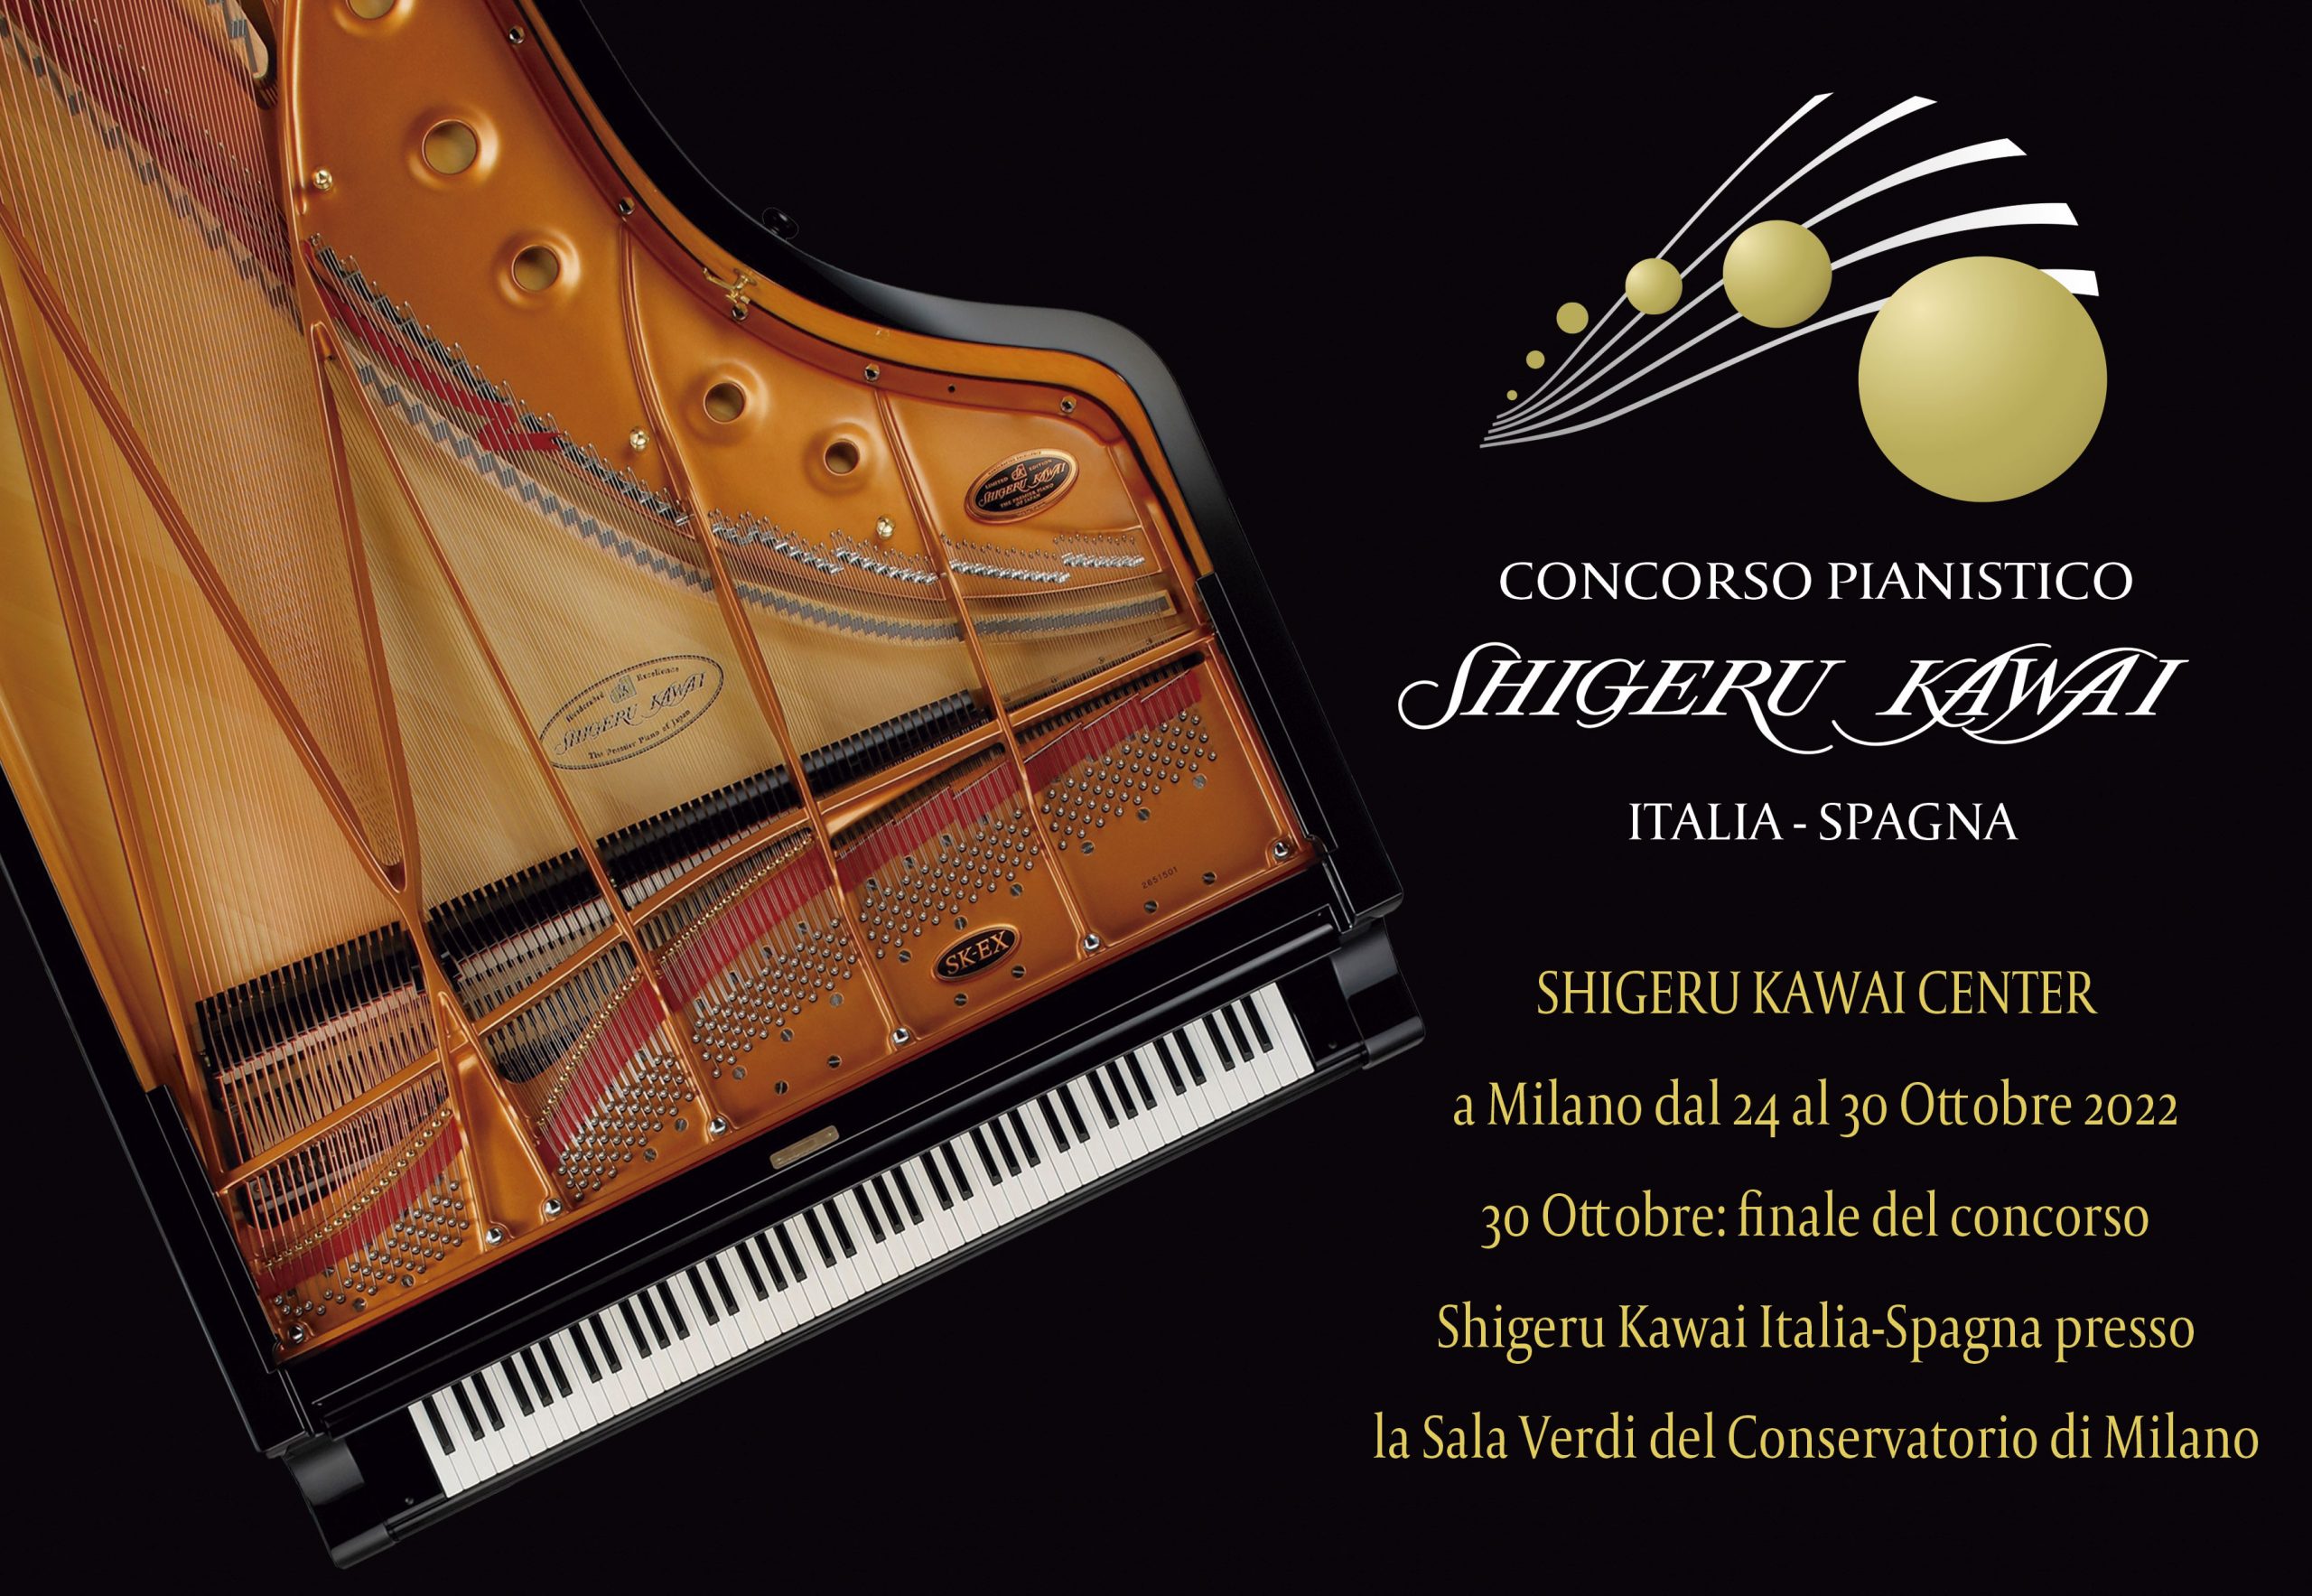 Riapertura del concorso pianistico Shigeru Kawai – Milano, 24-30 ottobre 2022